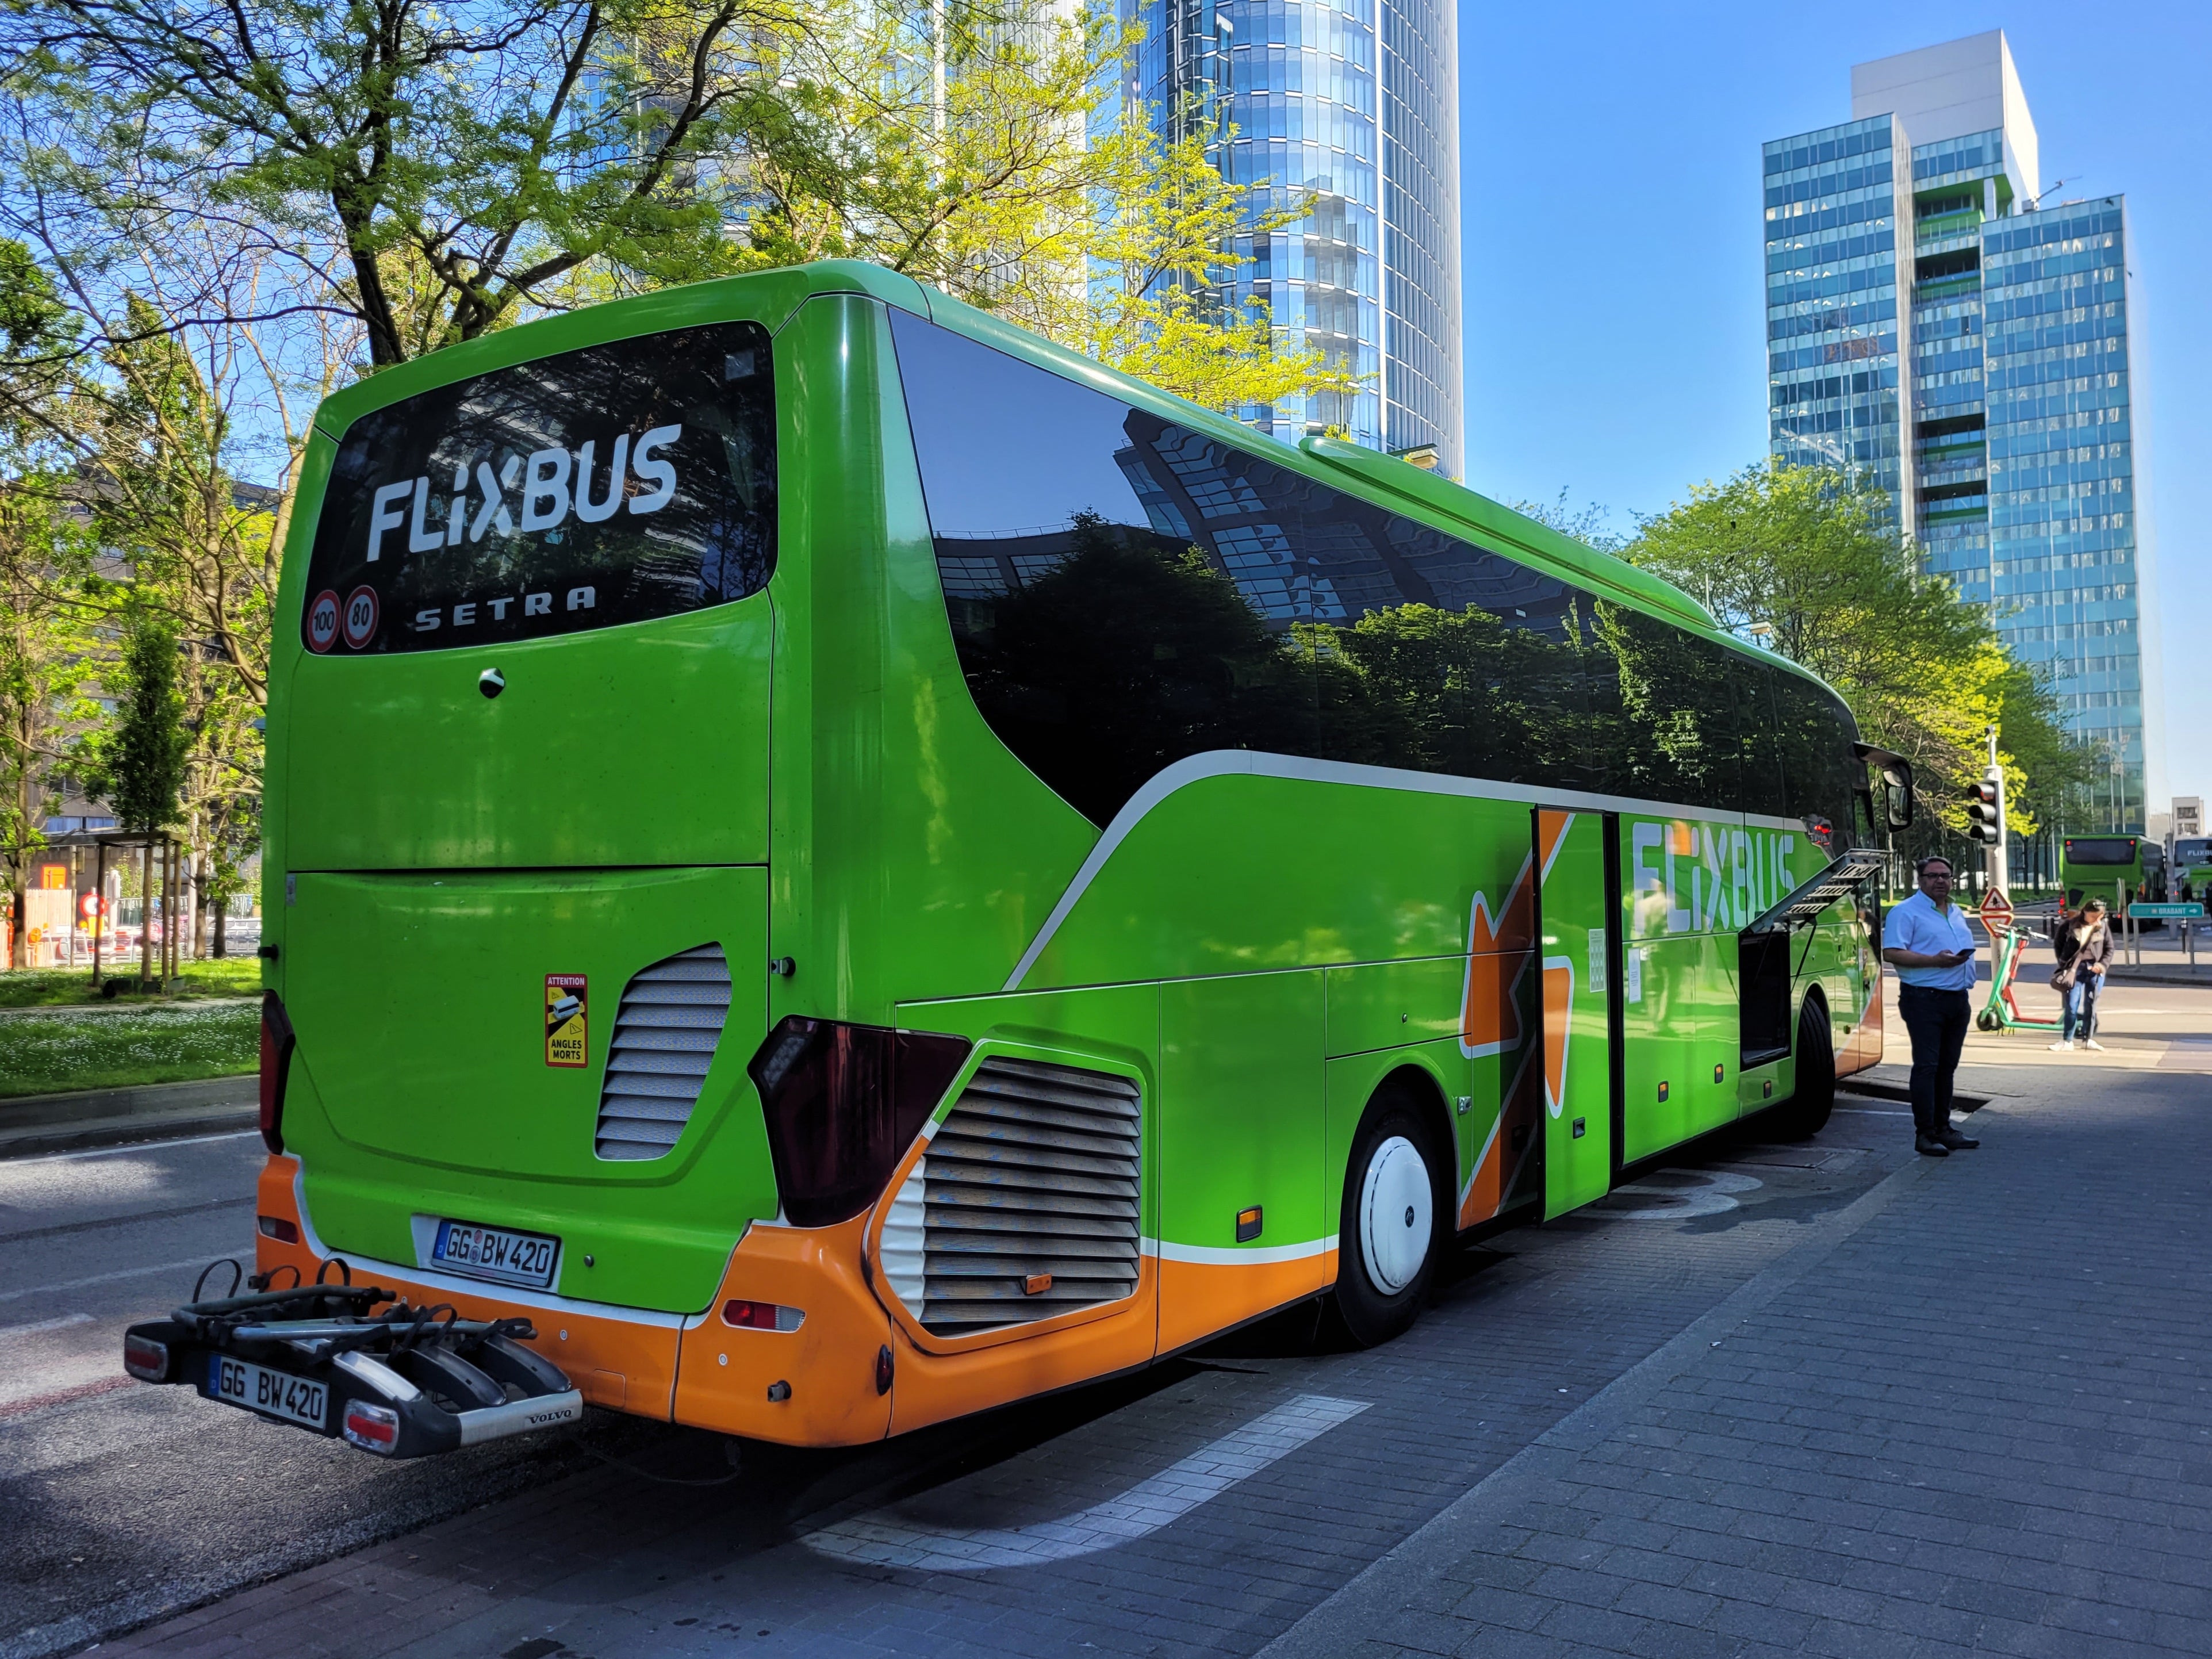 FlixBus operates coaches throughout Europe